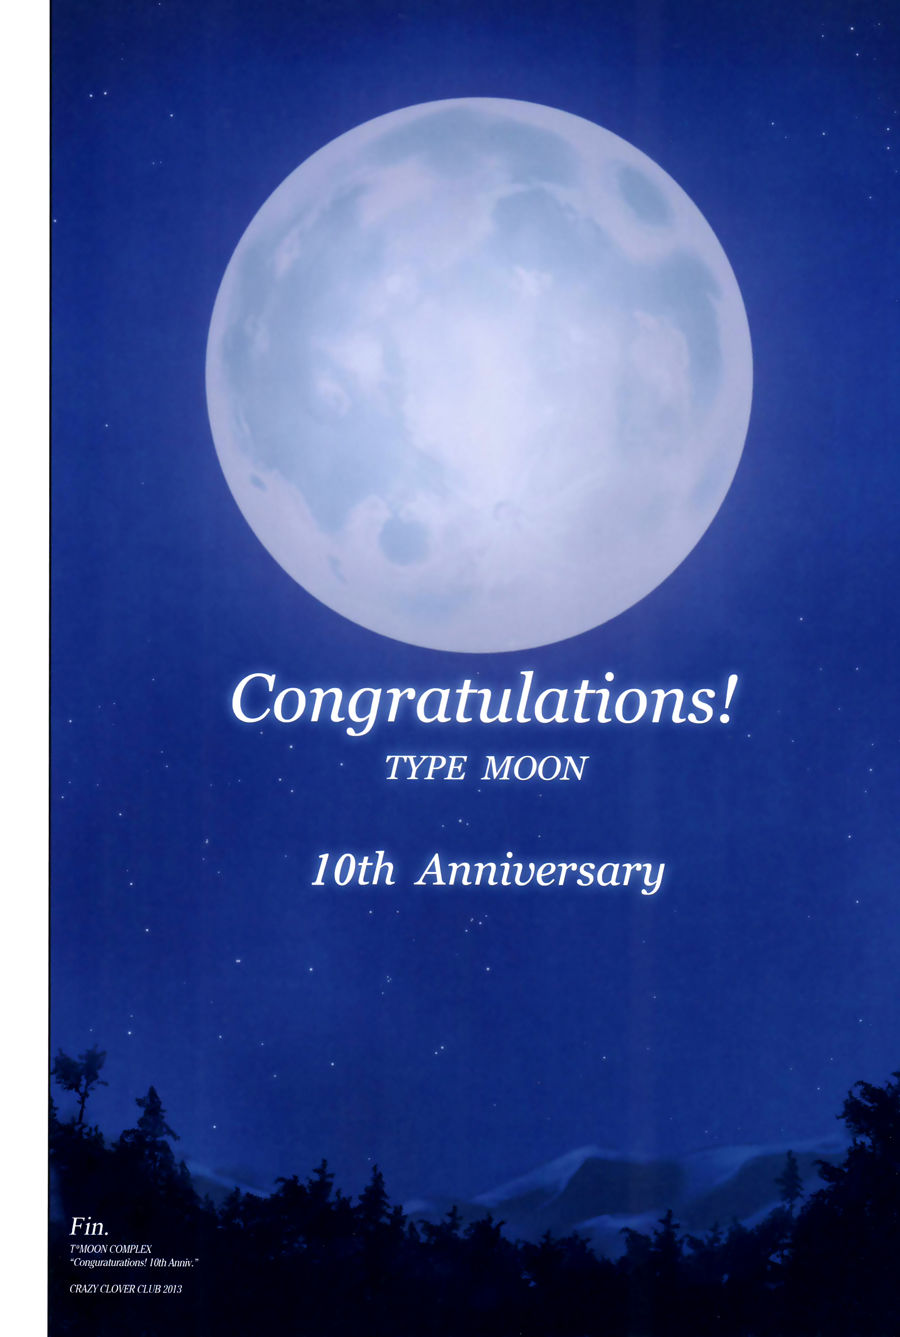 [crazy Клевер Клуб (shirotsumekusa)] т Луна комплекс congratulations! 10th юбилей (various) [exas] часть 2